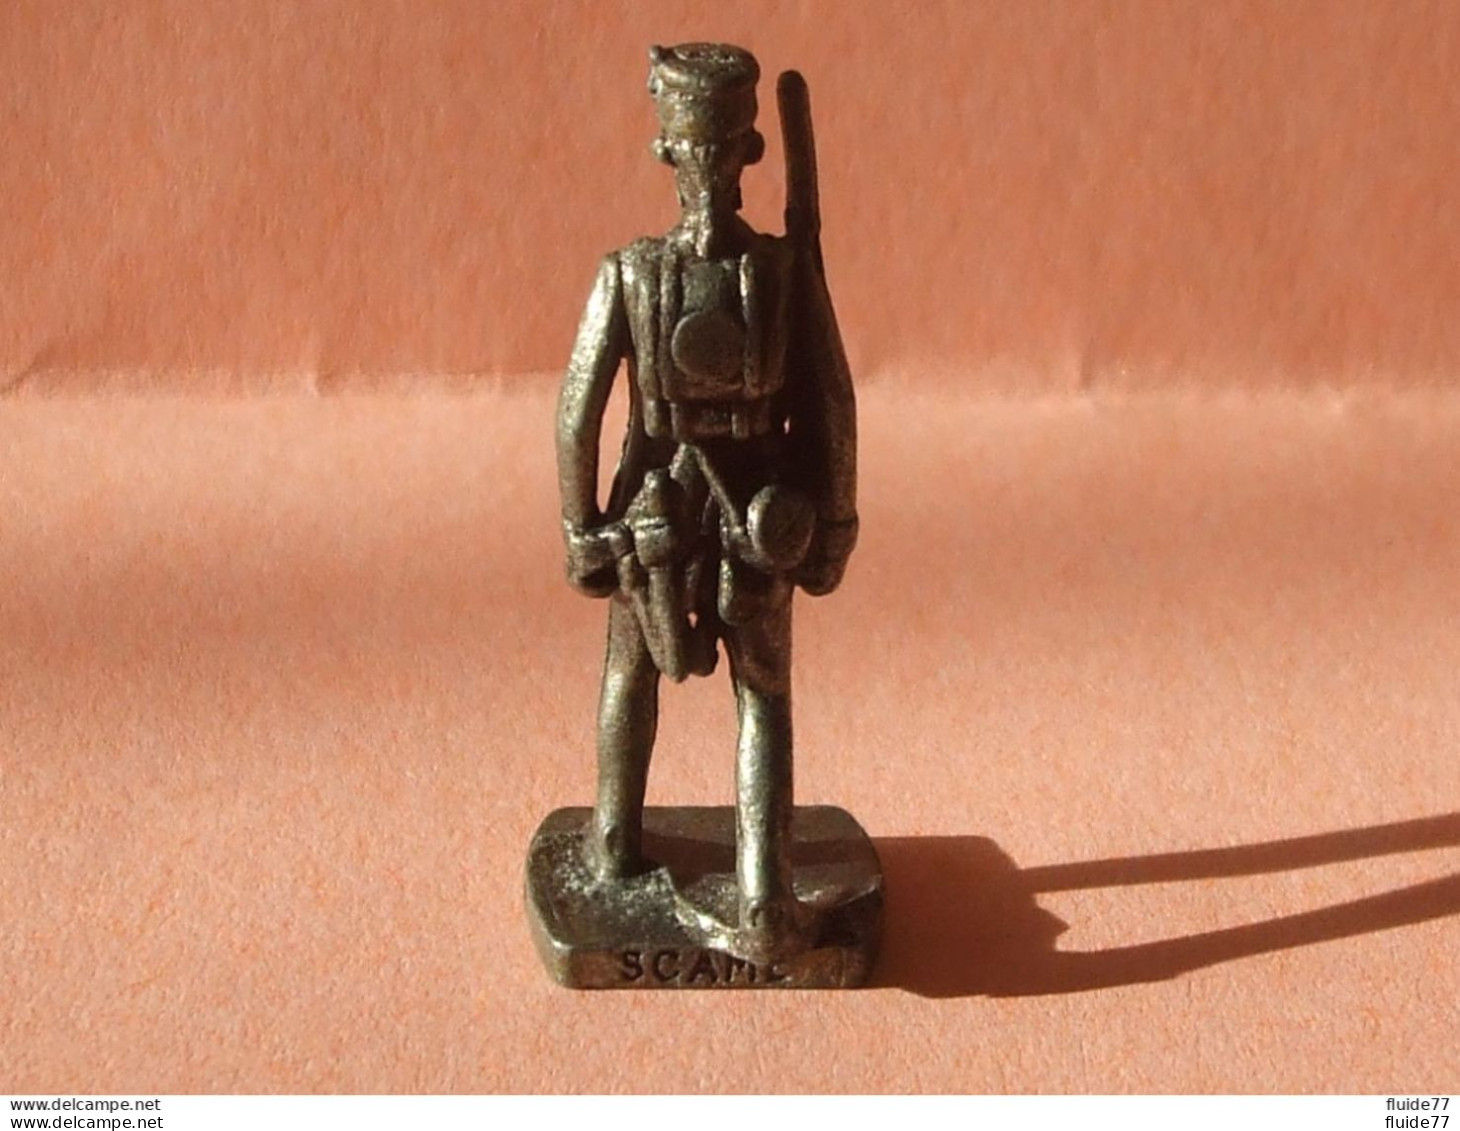 @ BRITANNIQUES De 1770 - Officier Commissionnaire  GB  1783 @ - Metal Figurines